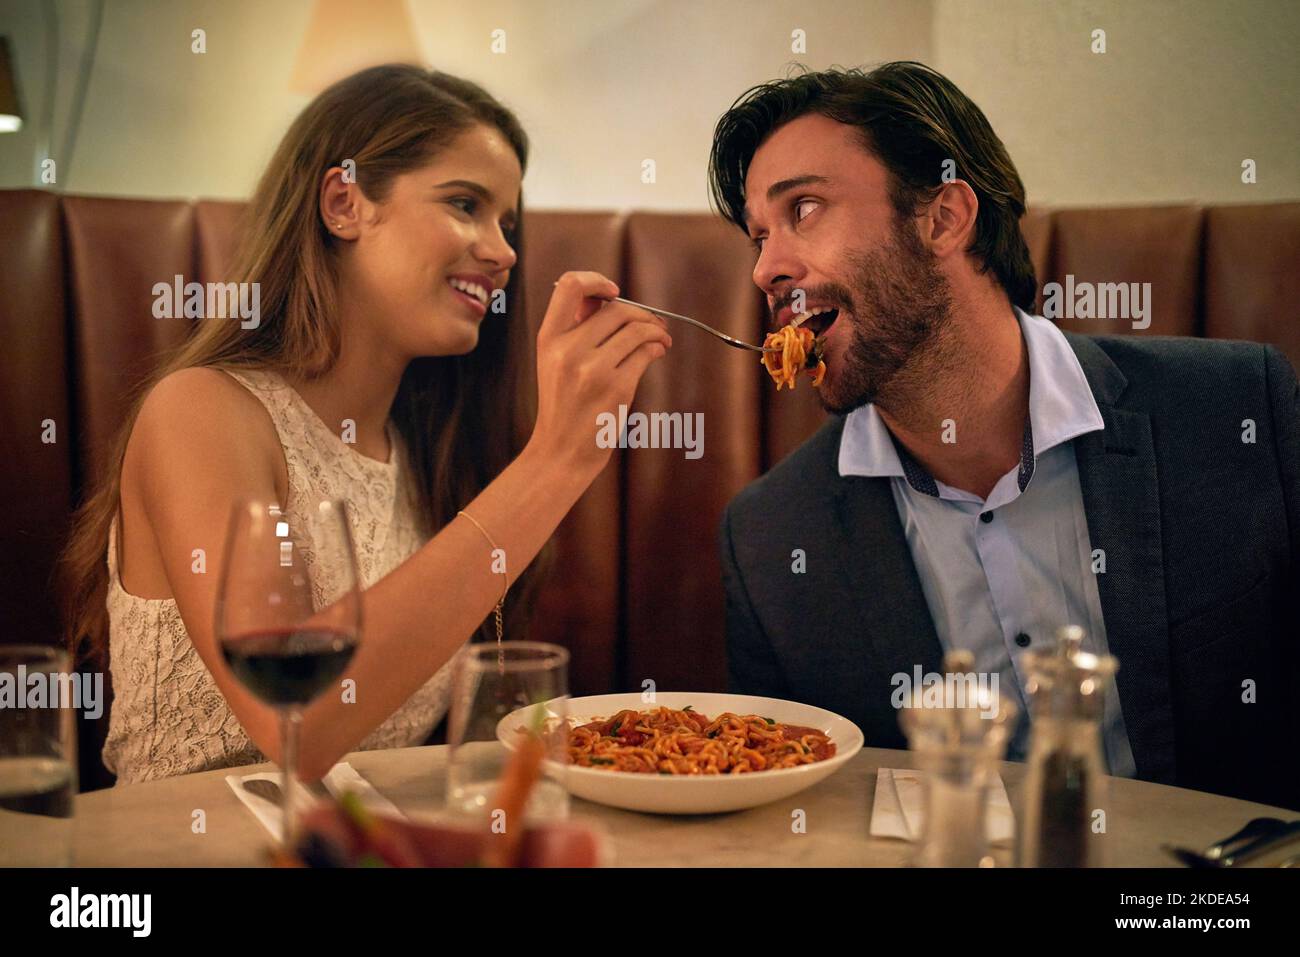 Liebe beim ersten Biss. Eine junge Frau füttert ihren Freund bei einem romantischen Dinner-Date in einem Restaurant mit einer Gabel voller Spaghetti. Stockfoto